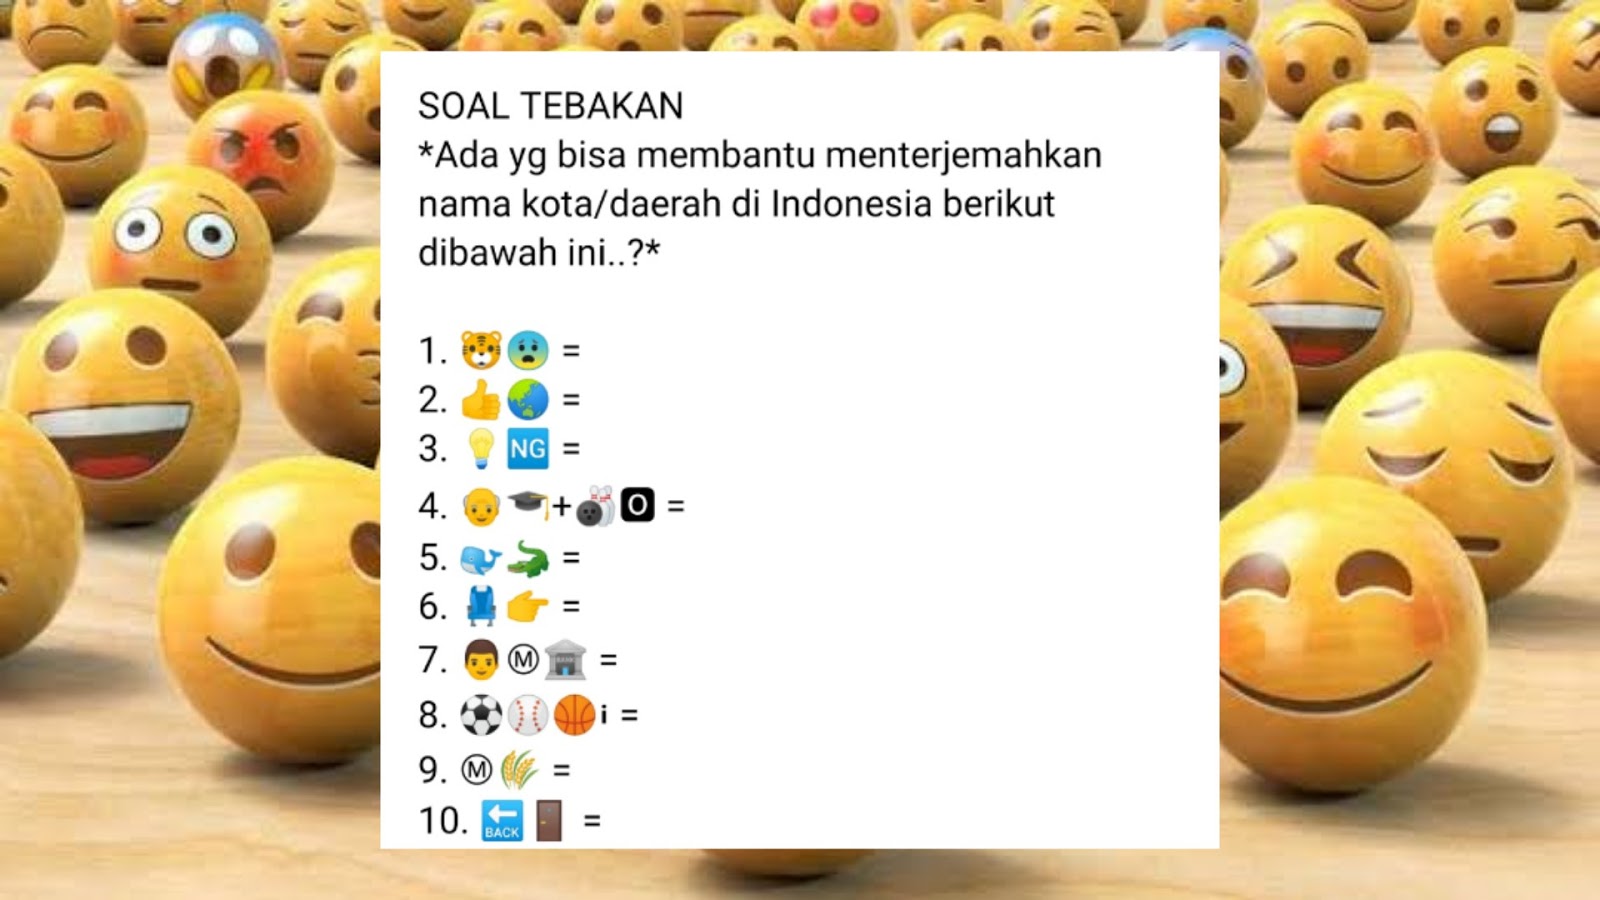 Tebak Gambar Emoji untuk Nama Kota di Indonesia - santripedia